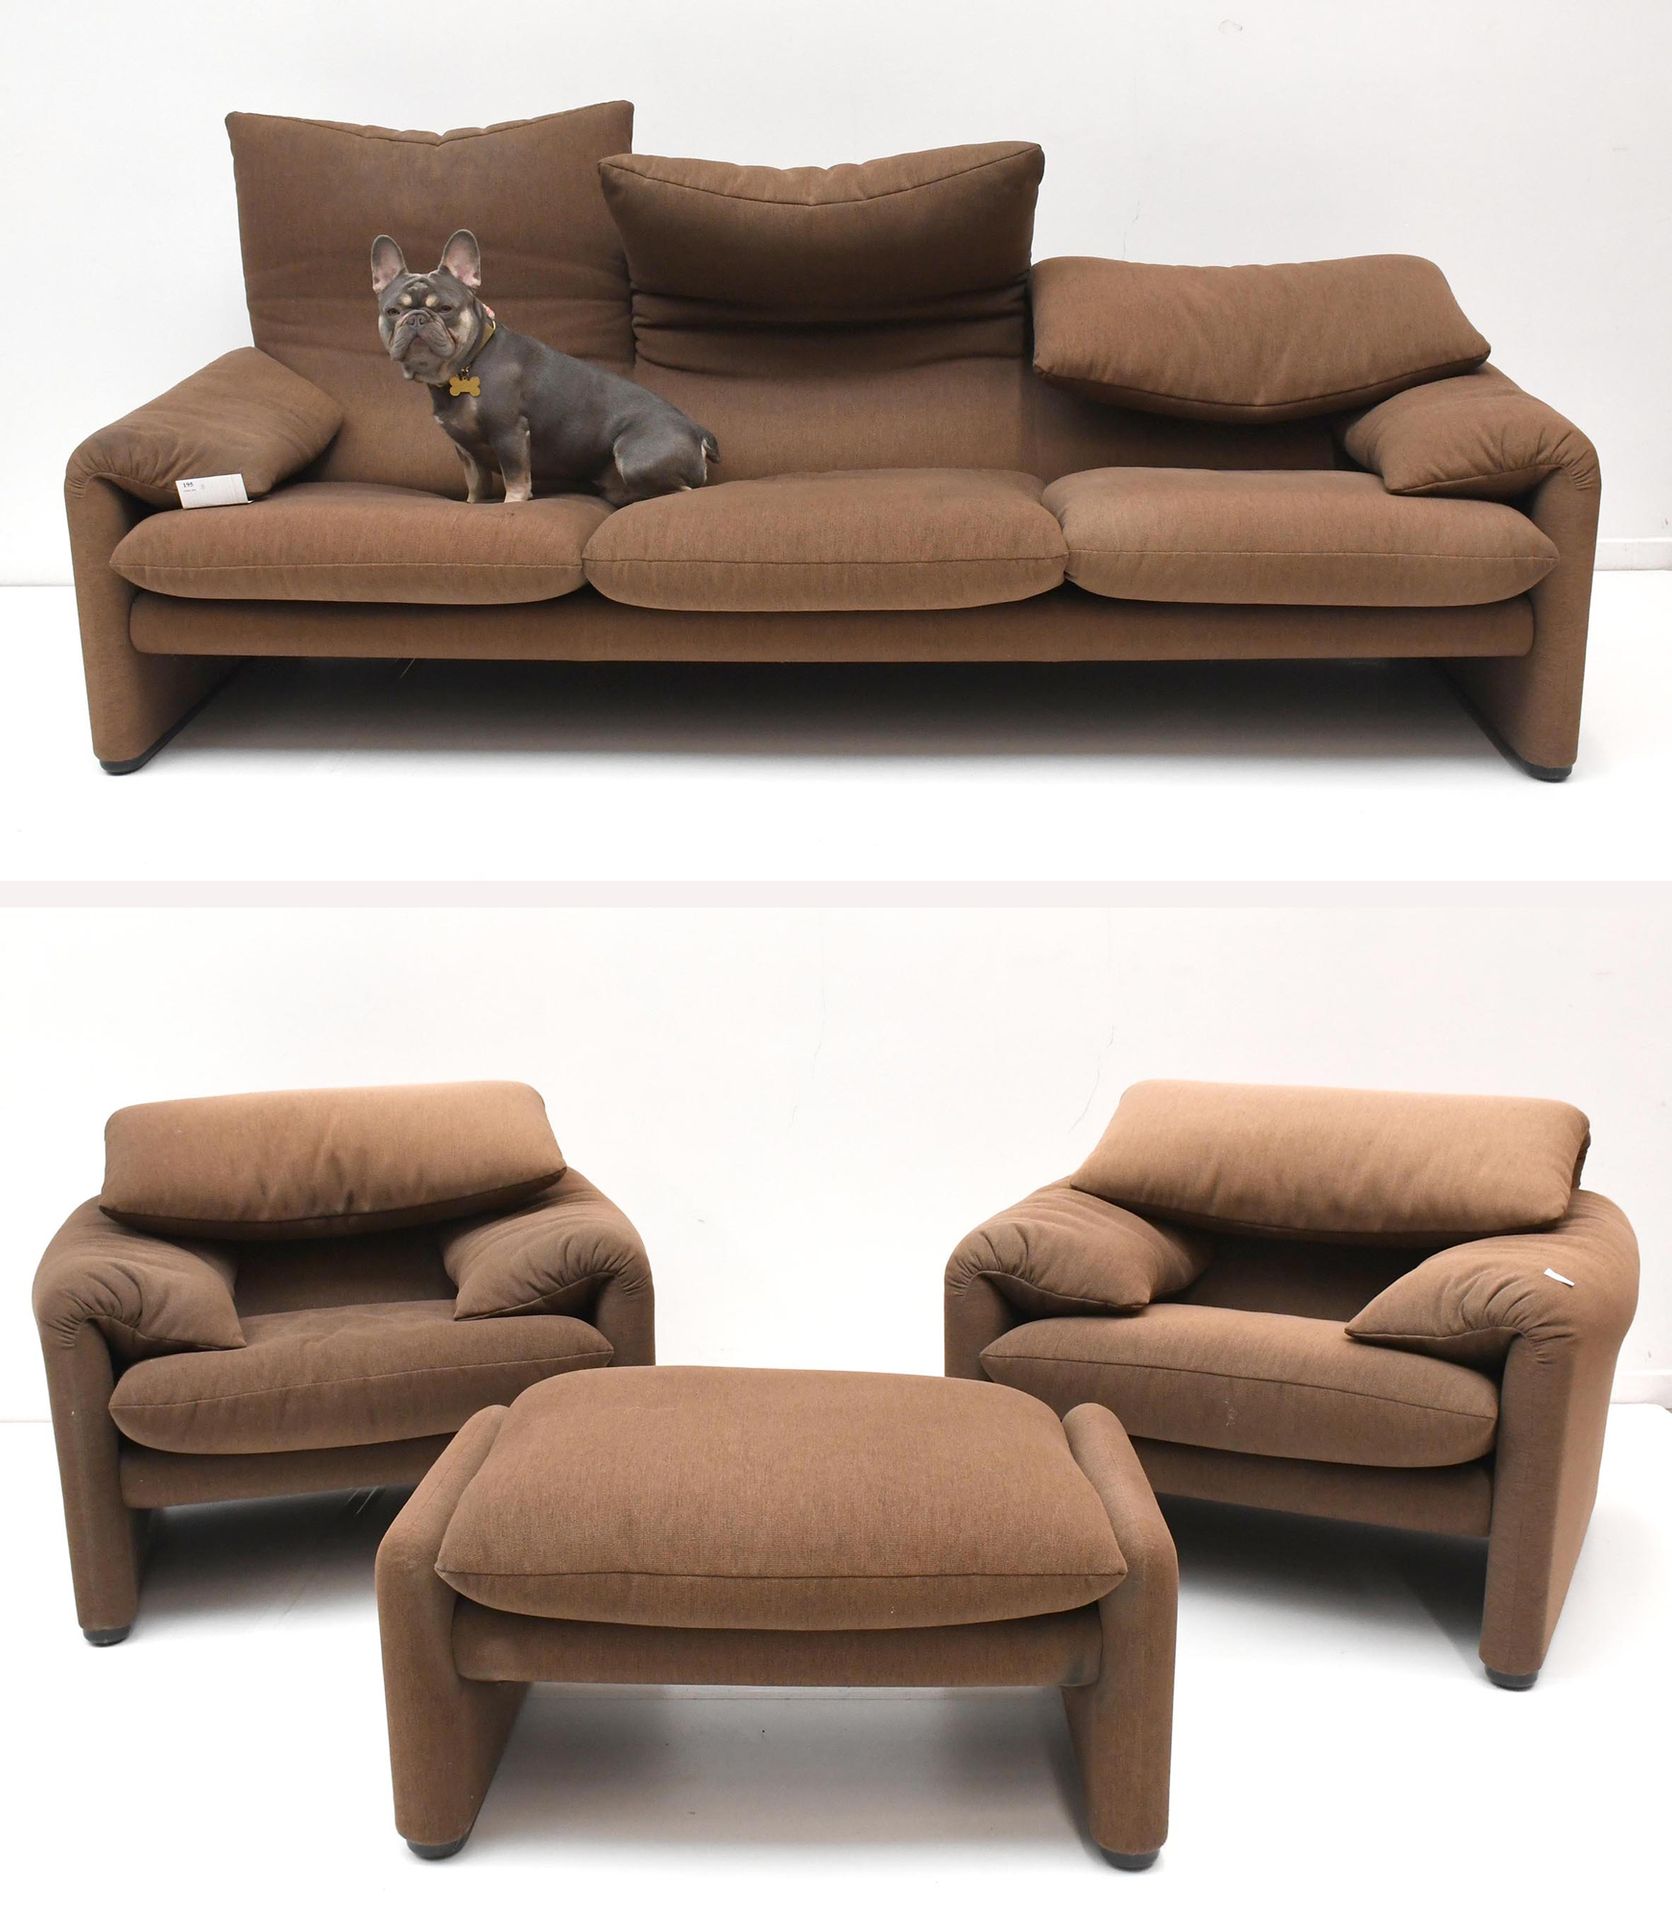 Null Cassina / Vico Magistretti
Maralunga" fabric lounge: three-seater sofa, two&hellip;